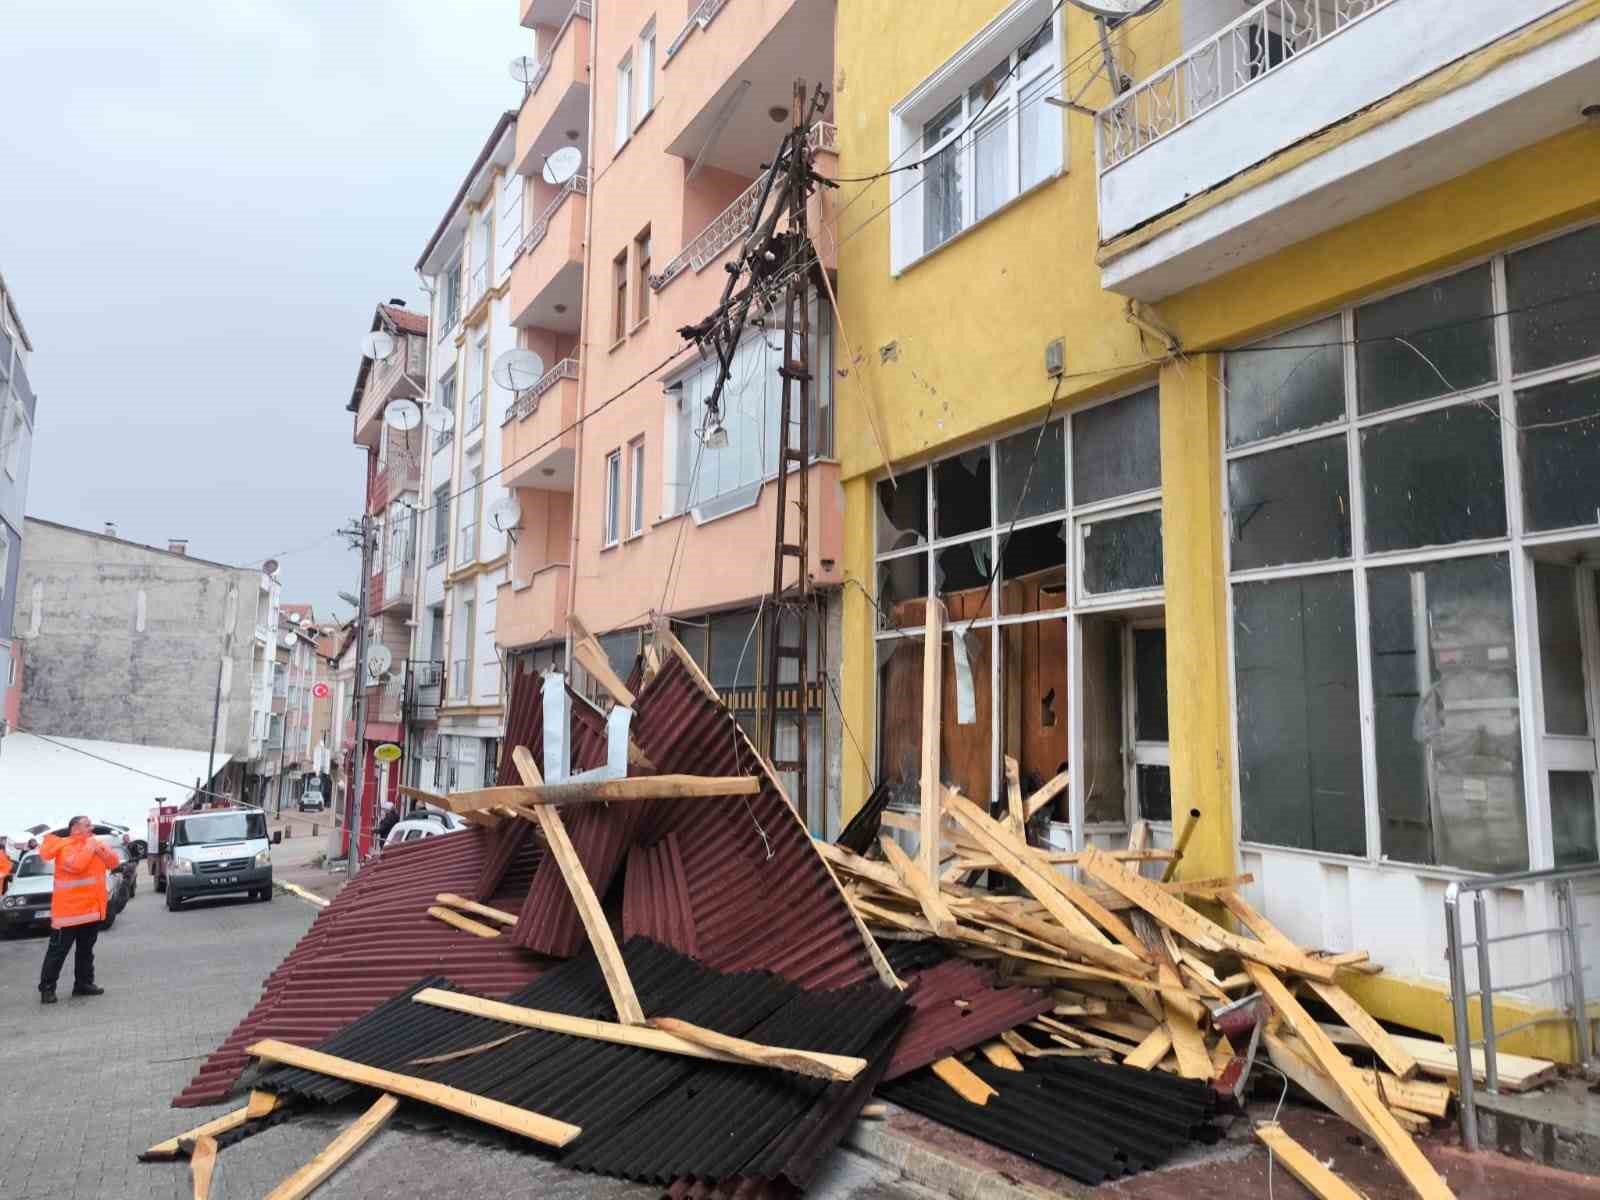 Suluova’da fırtına çatıları uçurdu, vatandaşlar deprem sandı
